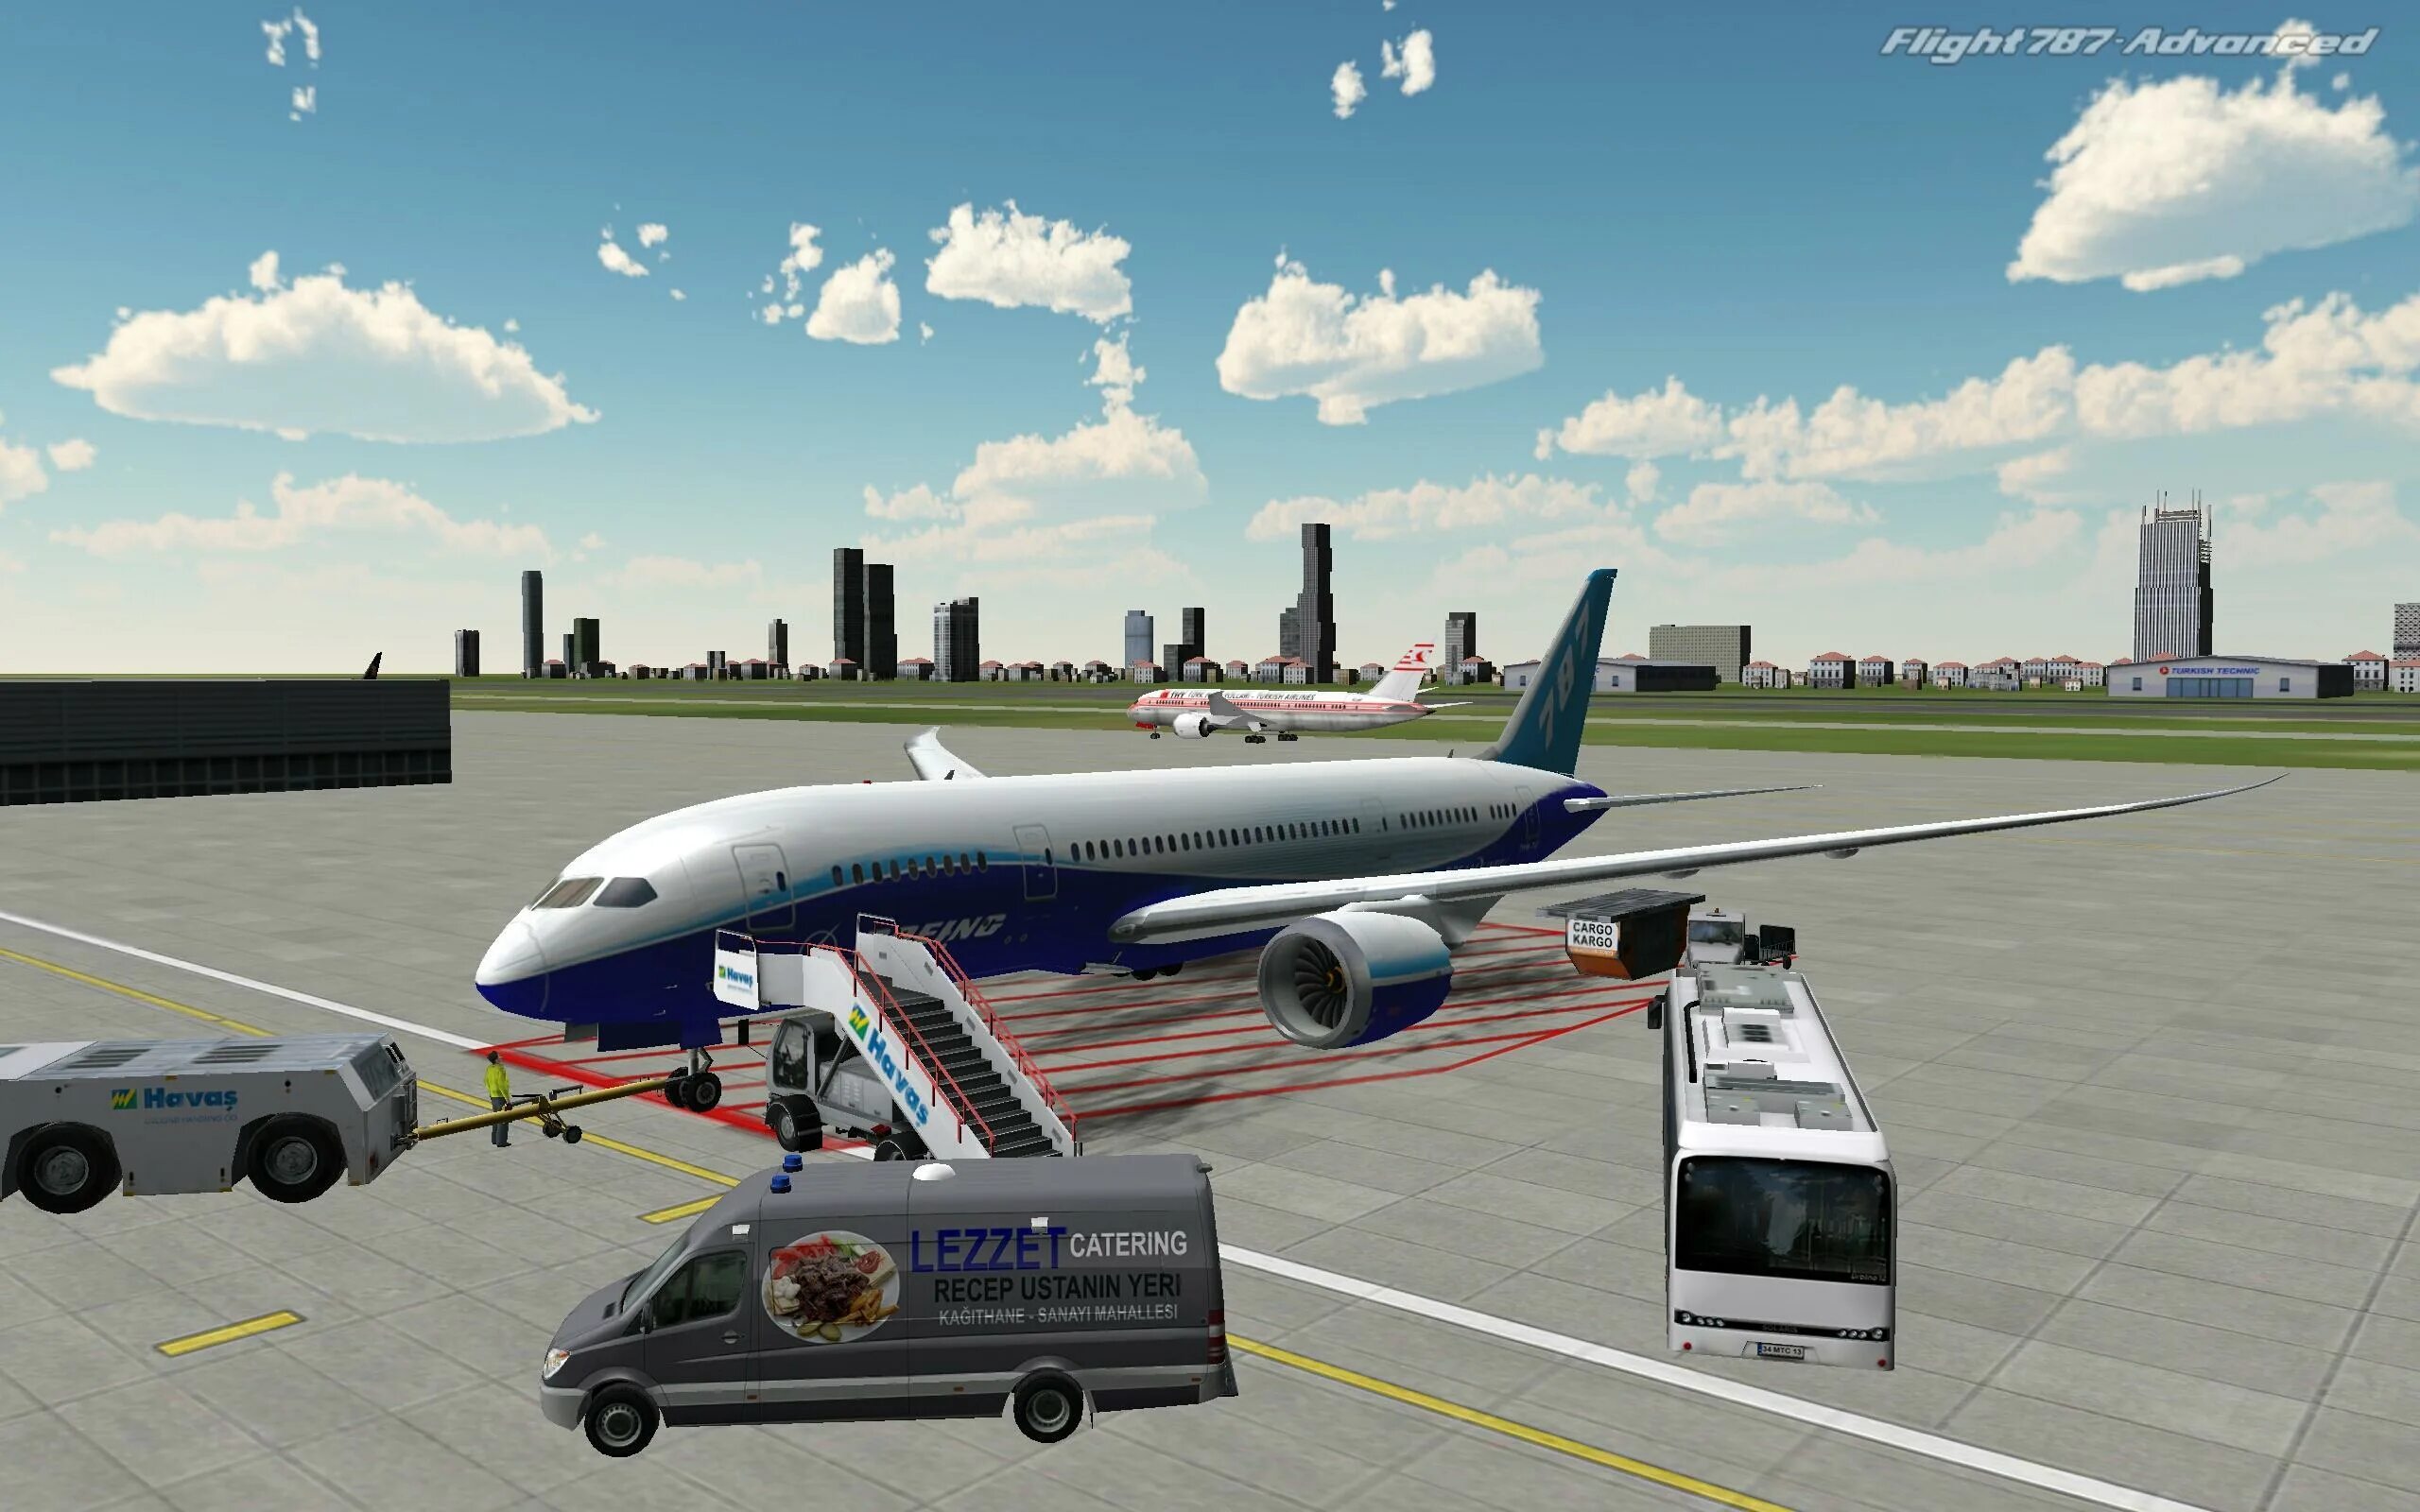 Flight 787 - Advanced. Реал Флайт симулятор. Авиасимулятор ВДНХ. Симулятор самолета пассажирского. Можно игры про самолет